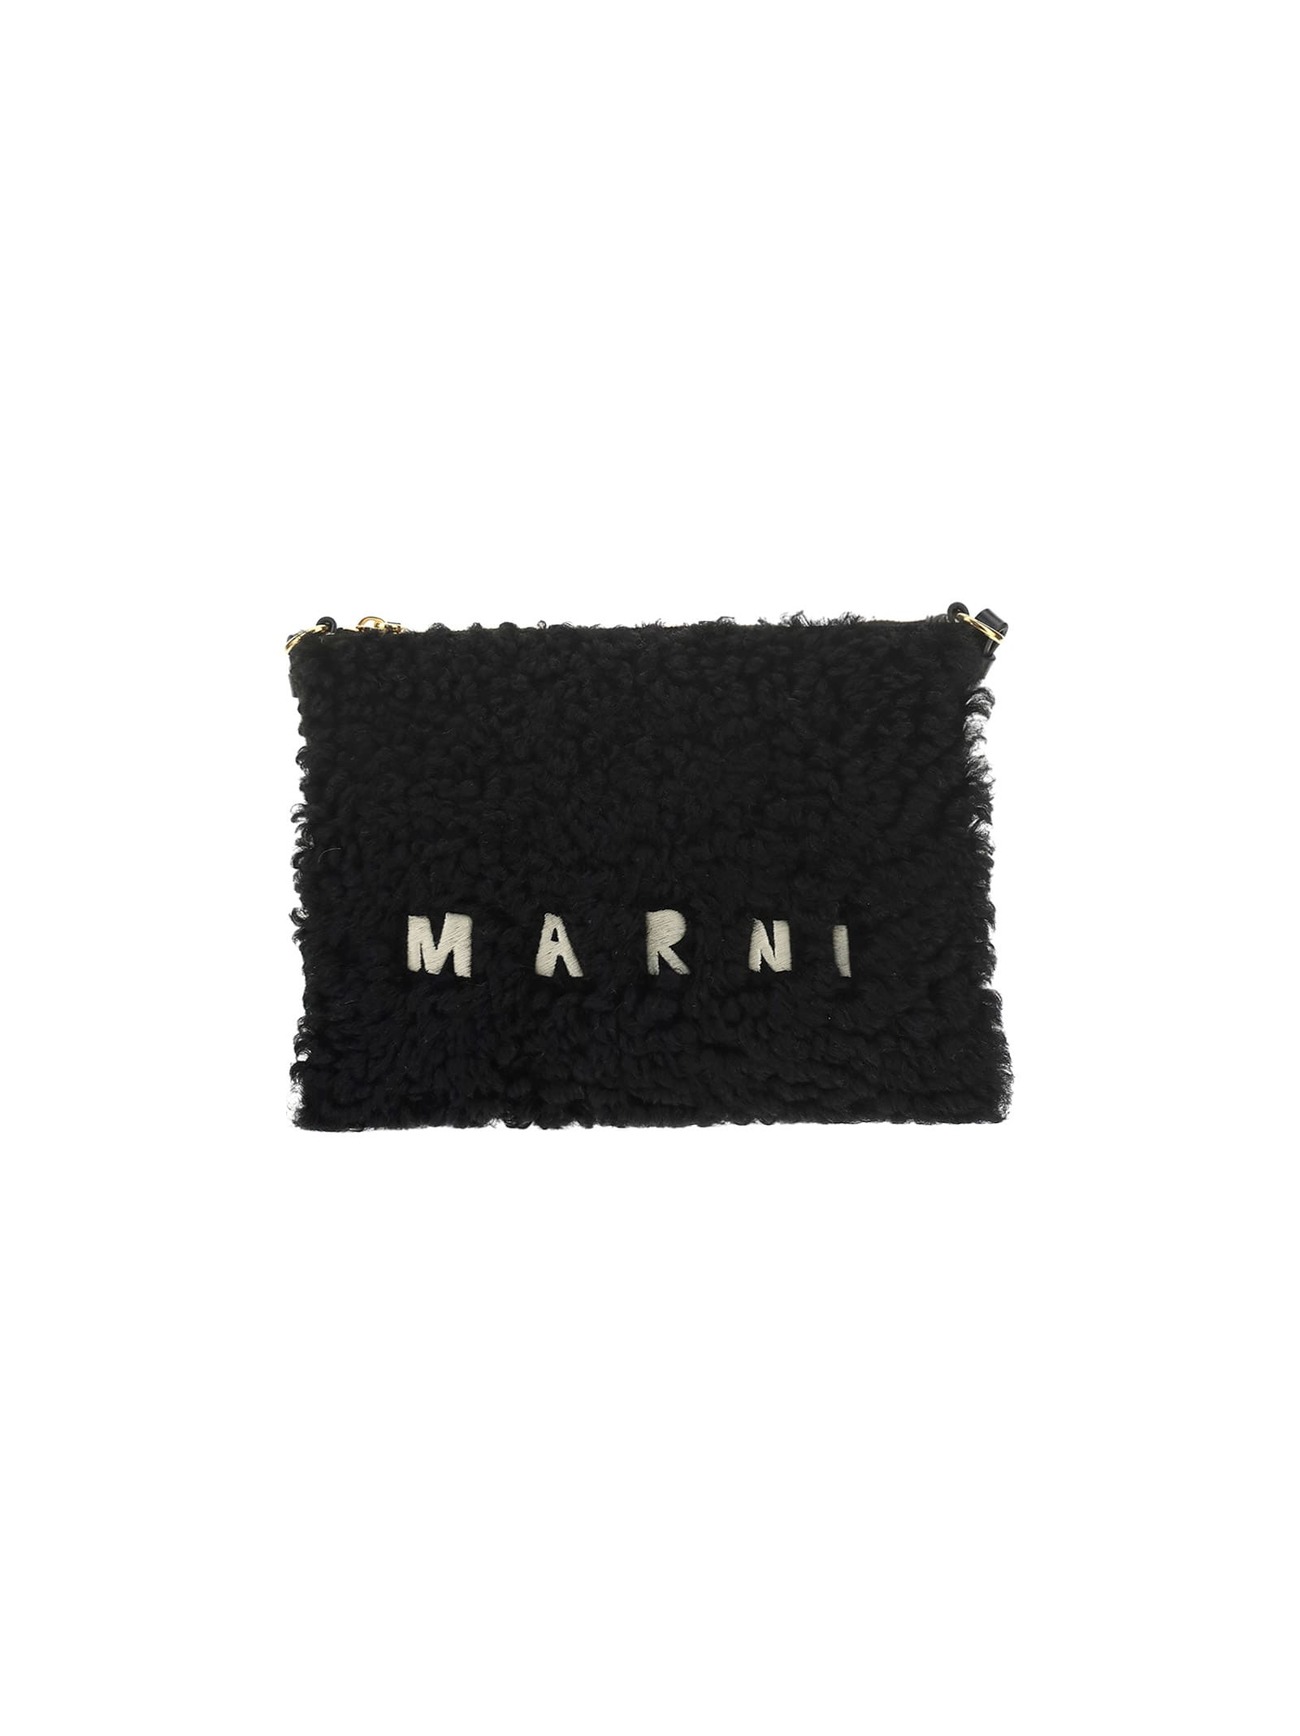 Marni Clutch Bag in black